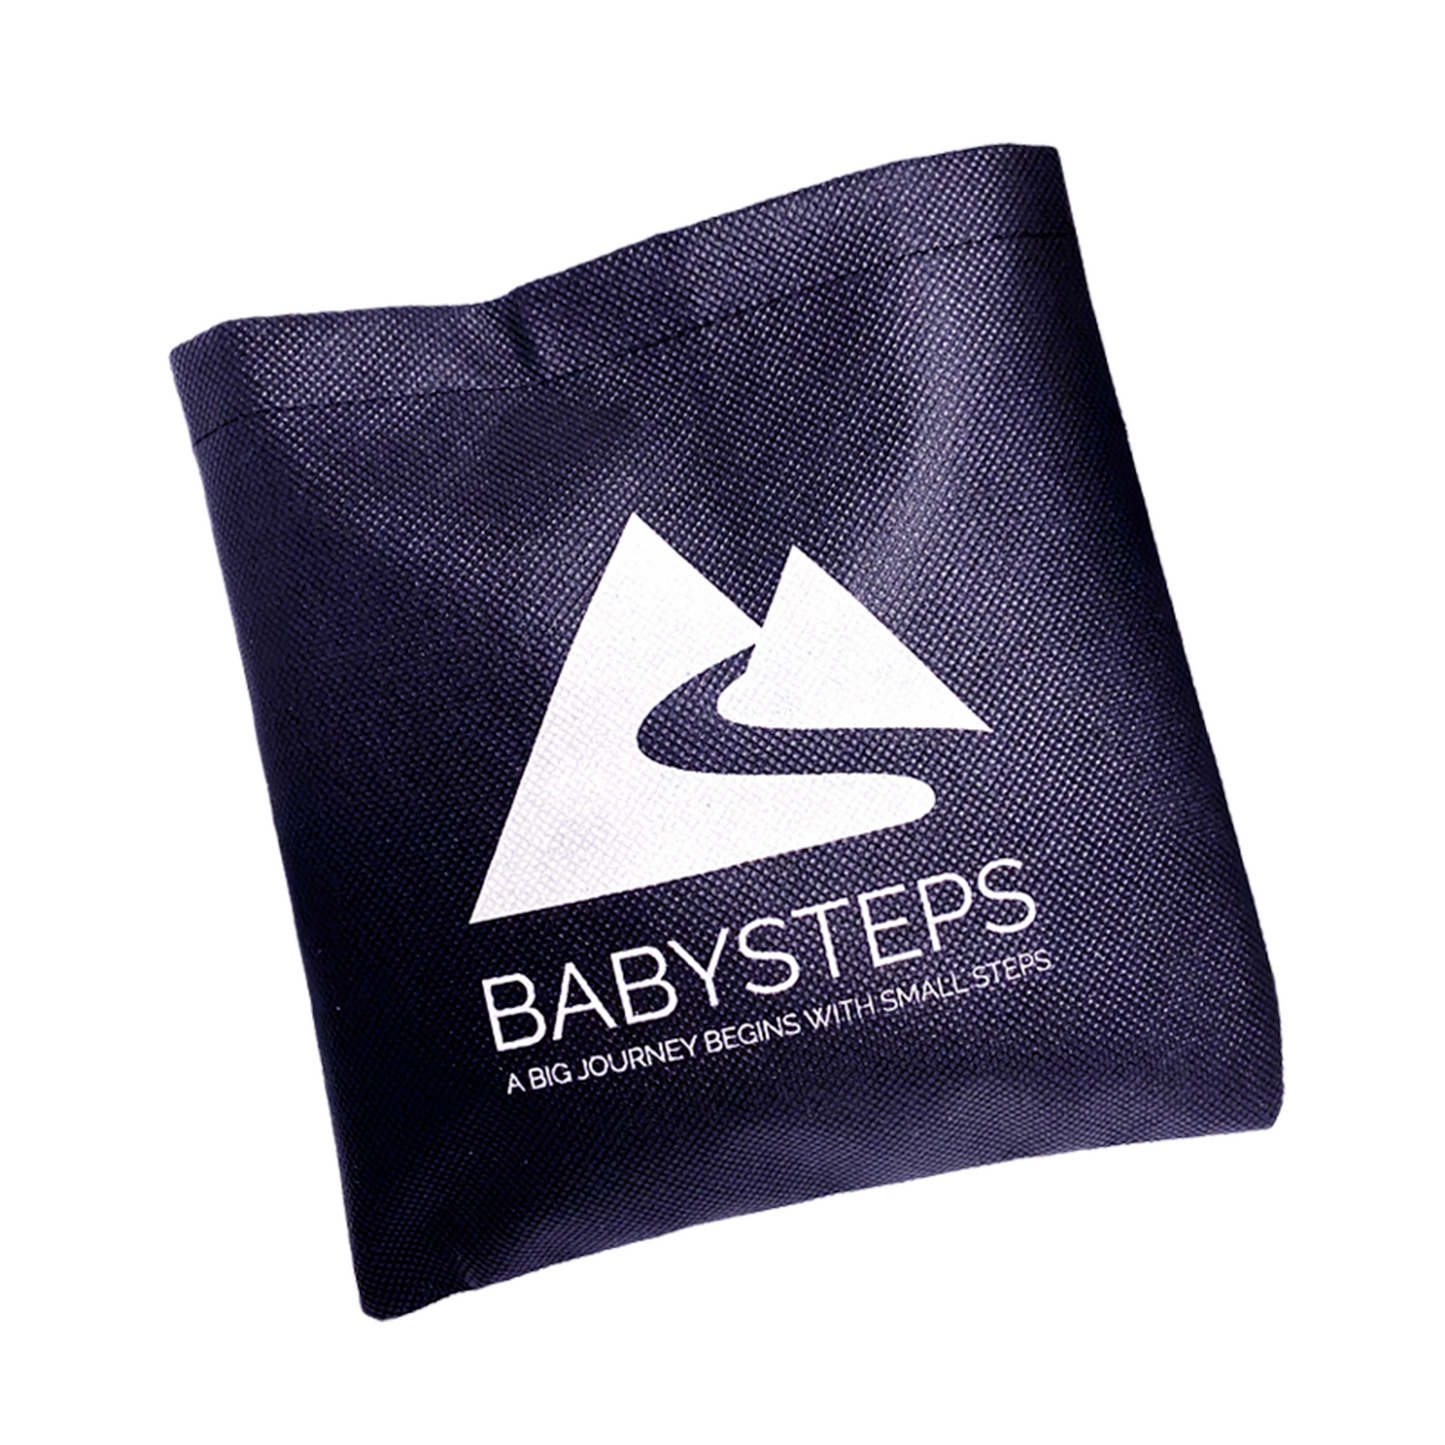 babysteps luxe bag